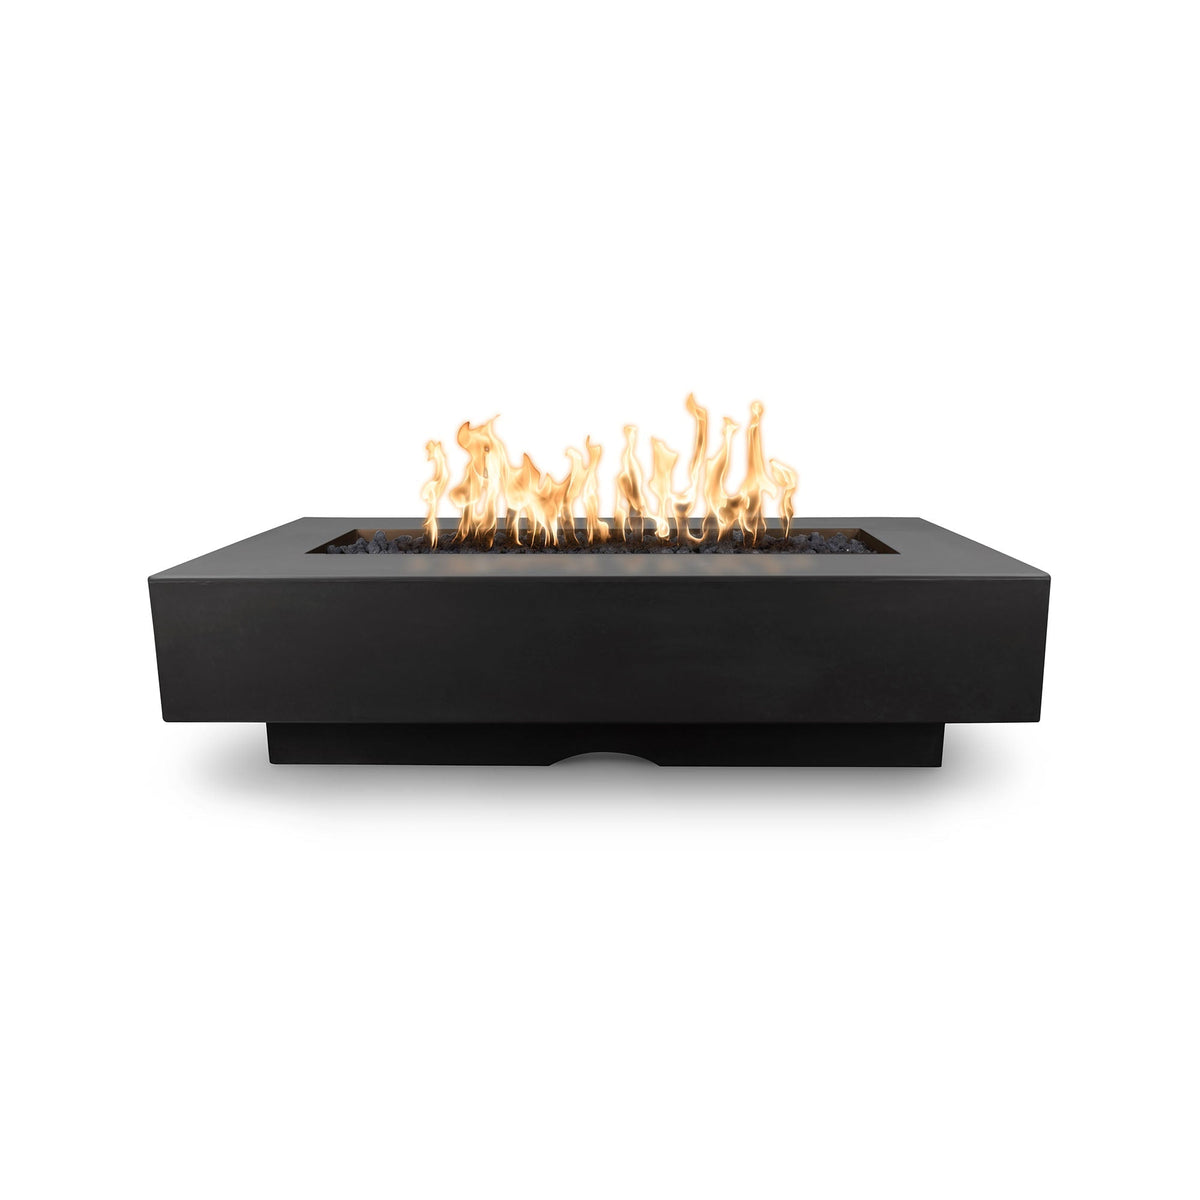 The Outdoor Plus 60&quot; Del Mar GFRC Concrete Rectangle Fire Pit Table in Black